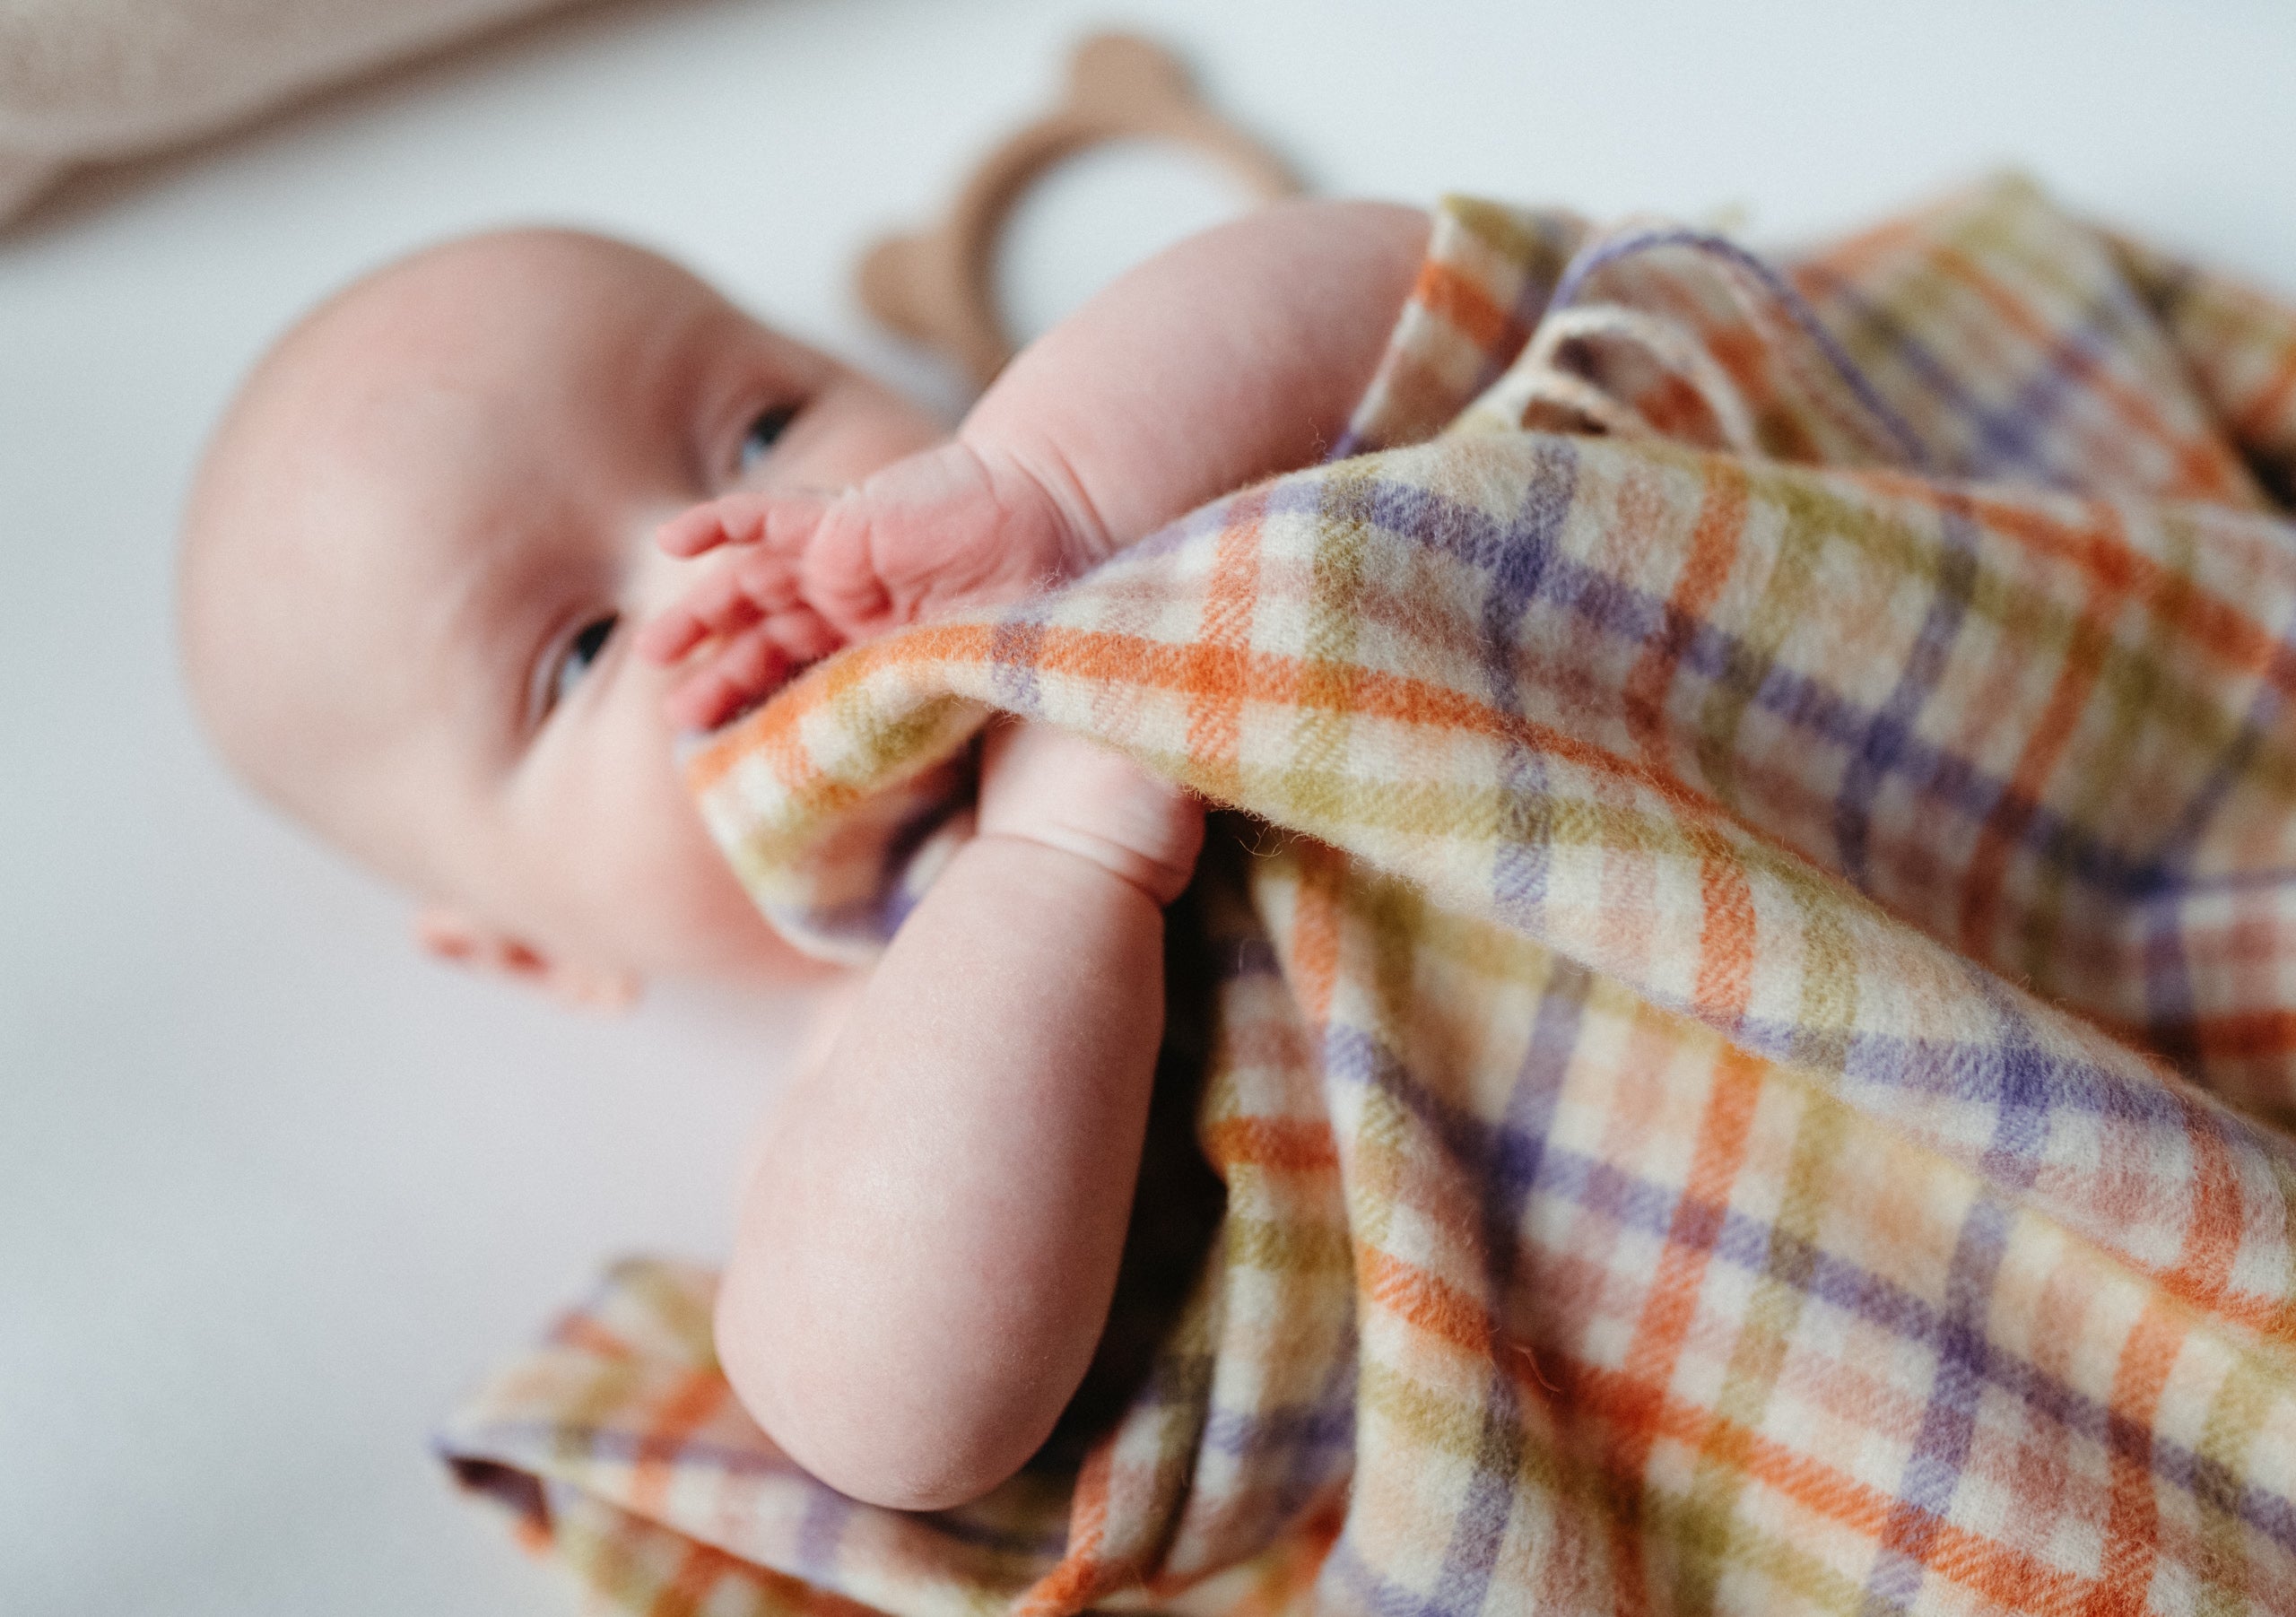 Nahaufnahme eines Babys, das in einem Kinderbett liegt und von einer farbenfrohen Babydecke mit Gingham-Karo bedeckt ist